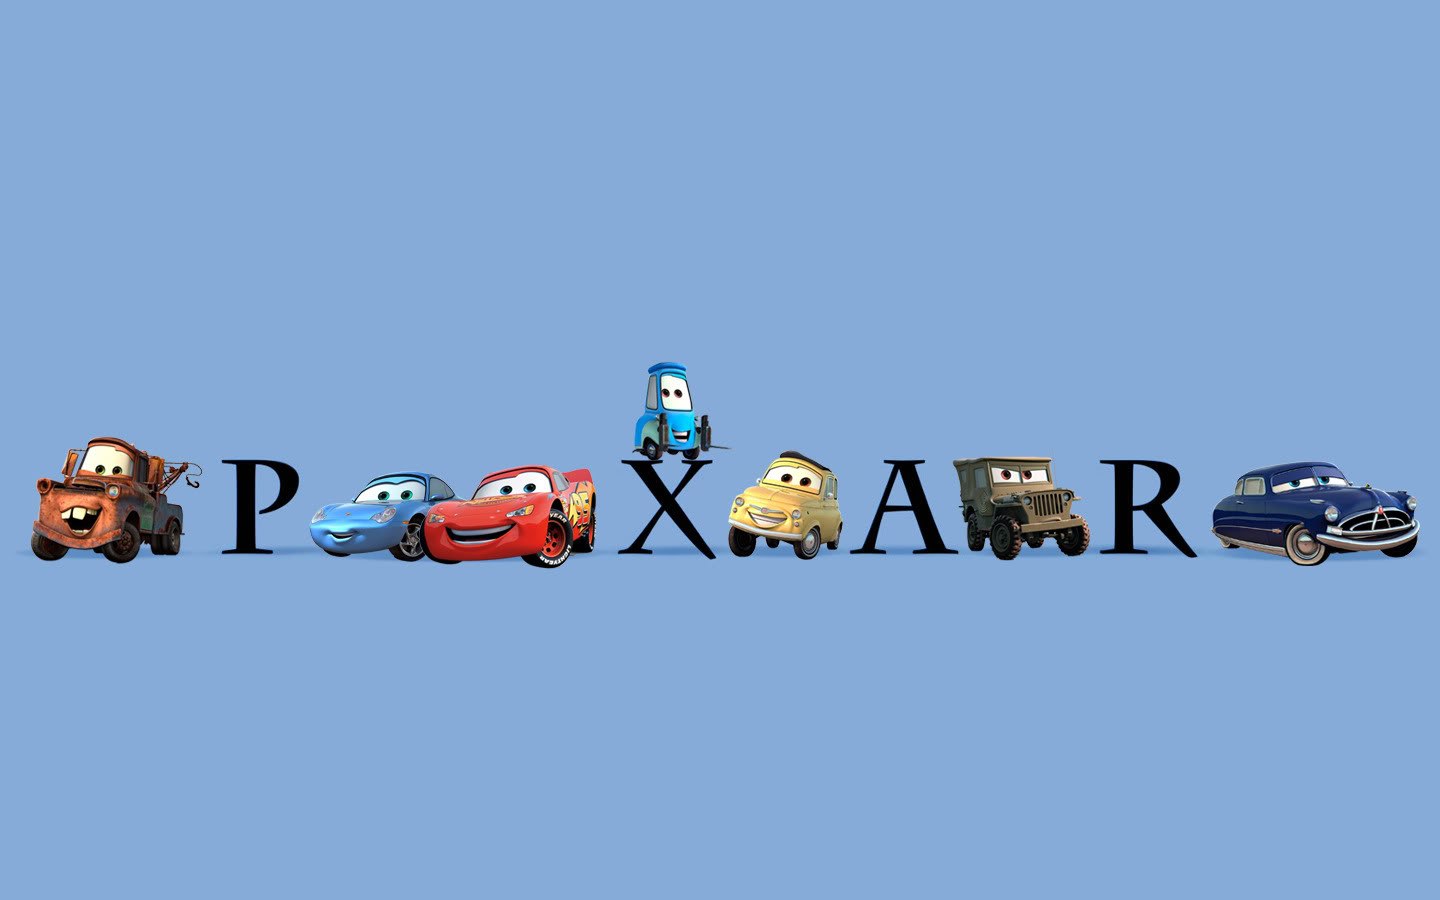 Компания пиксар. Дисней Пиксар студия. Персонажи студии Пиксар. Заставка студии Пиксар. Pixar логотип.